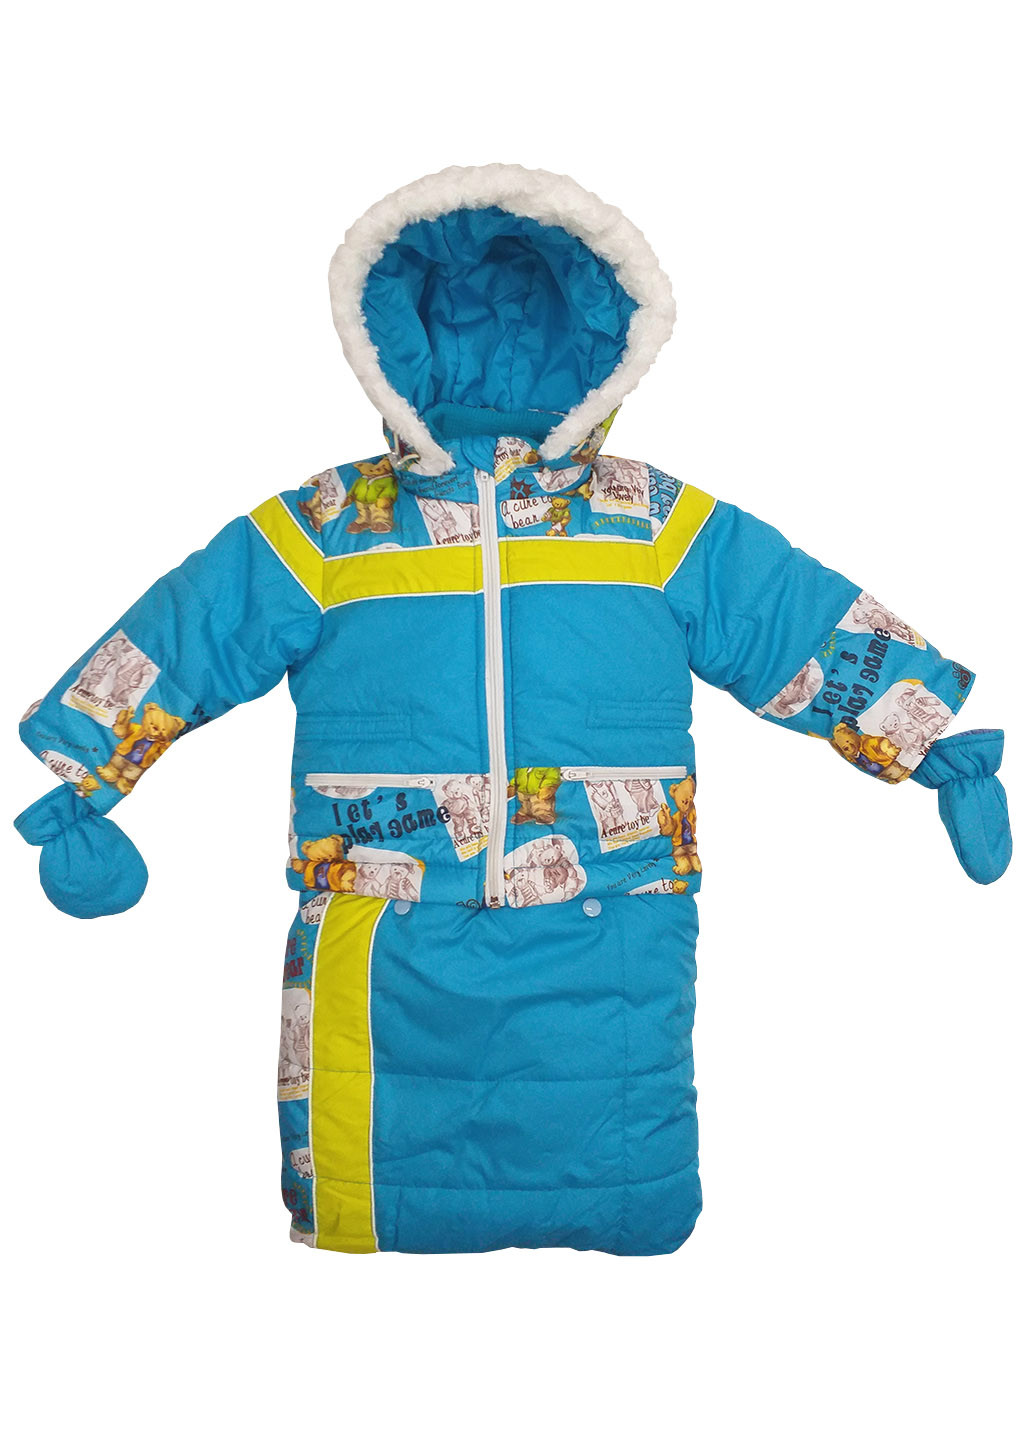 Голубой зимний комплект-тройка ( куртка, полукомбинезон,мешок) Luxik